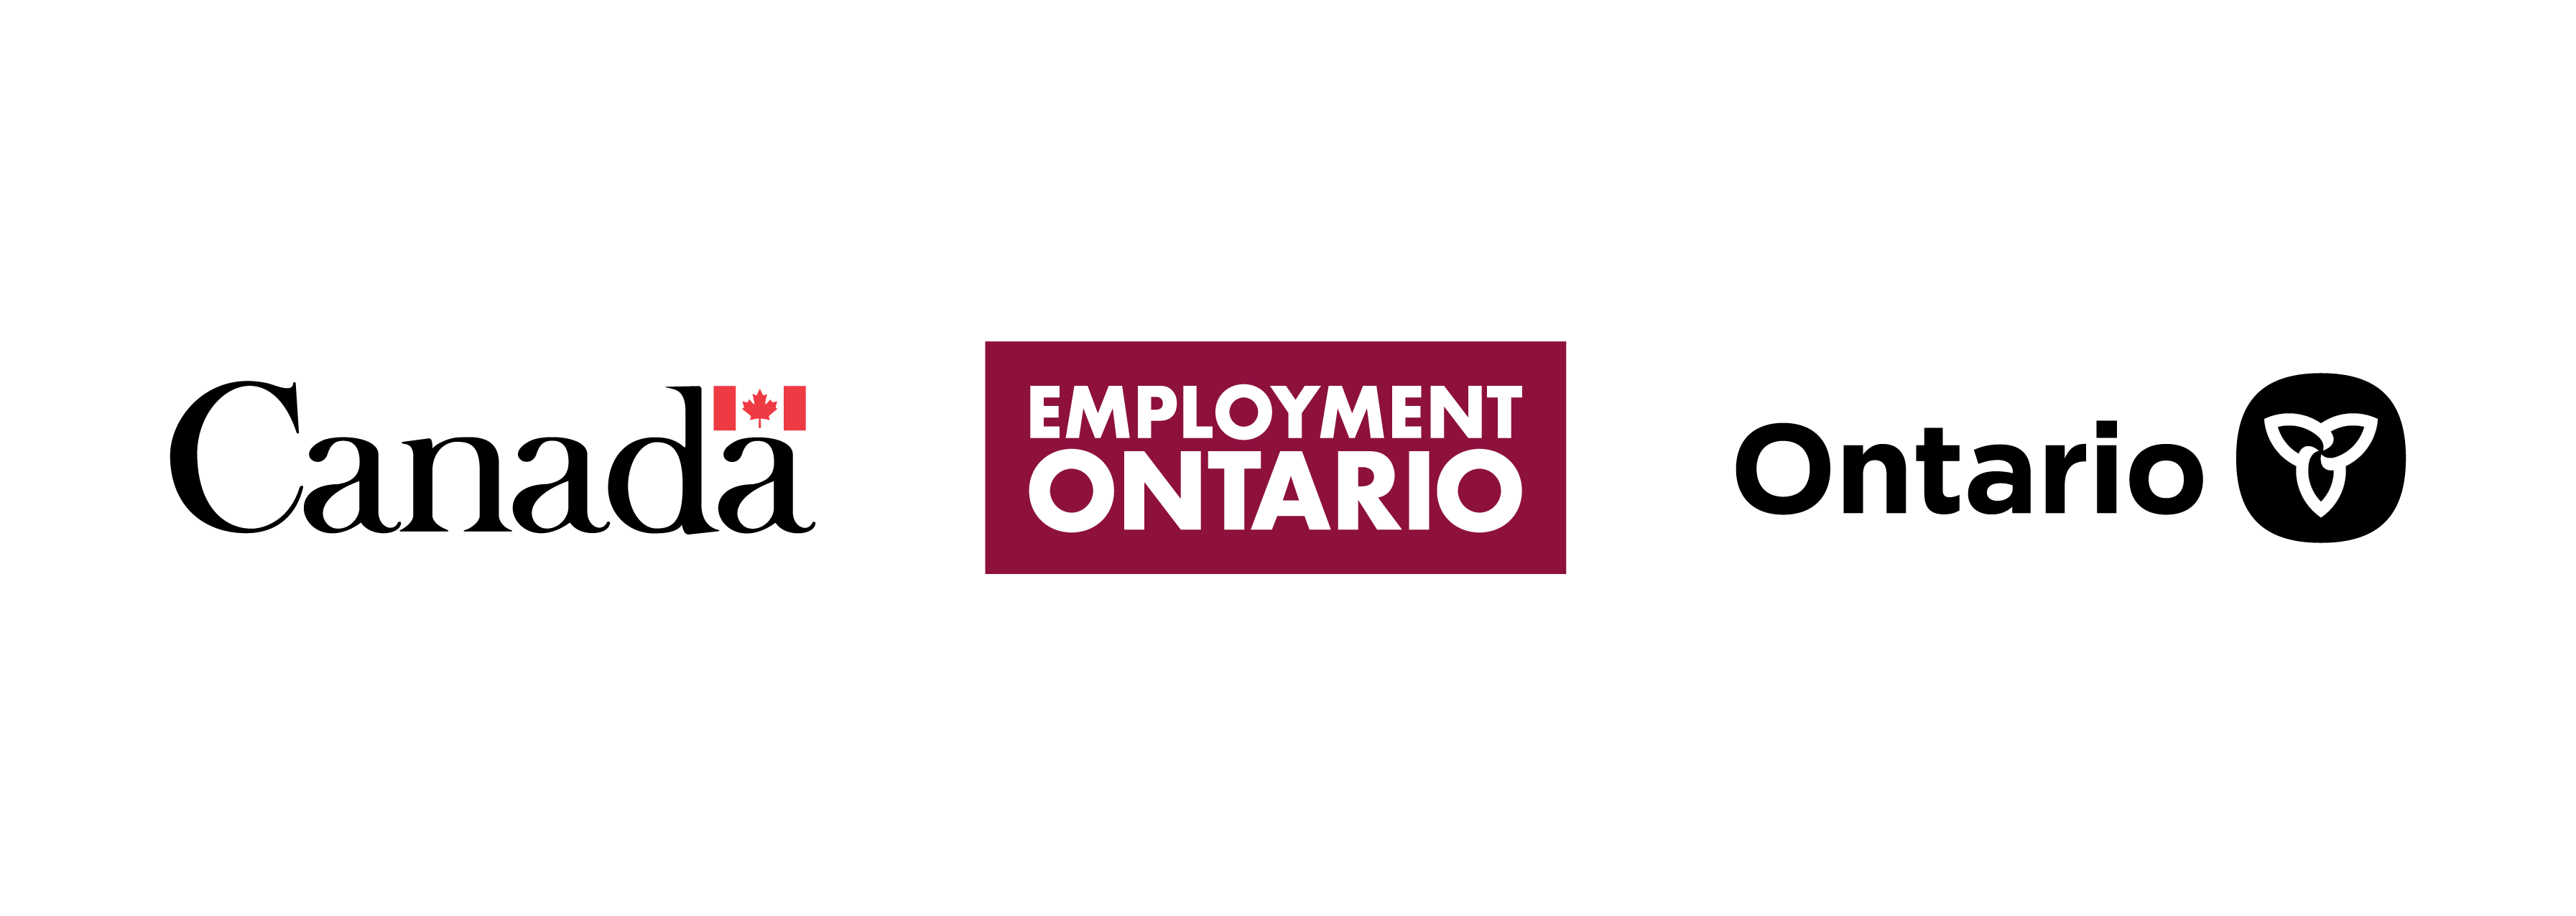 Employment Ontario Tri Mark Logo